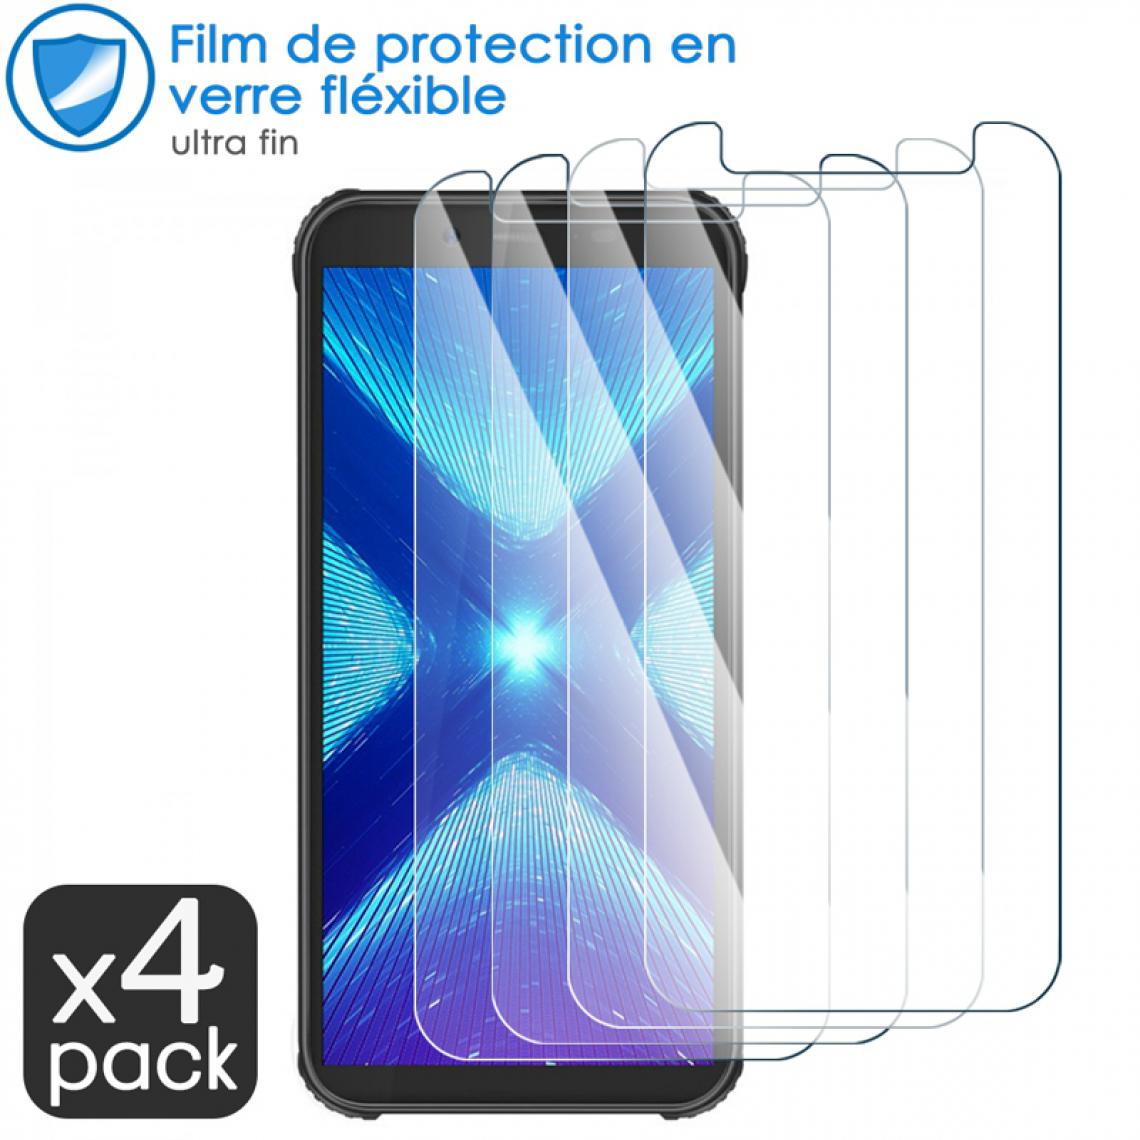 Karylax - Film de Protection d'écran en Verre Fléxible Dureté 9H pour Allview P4 Pro (Pack x4) - Protection écran smartphone